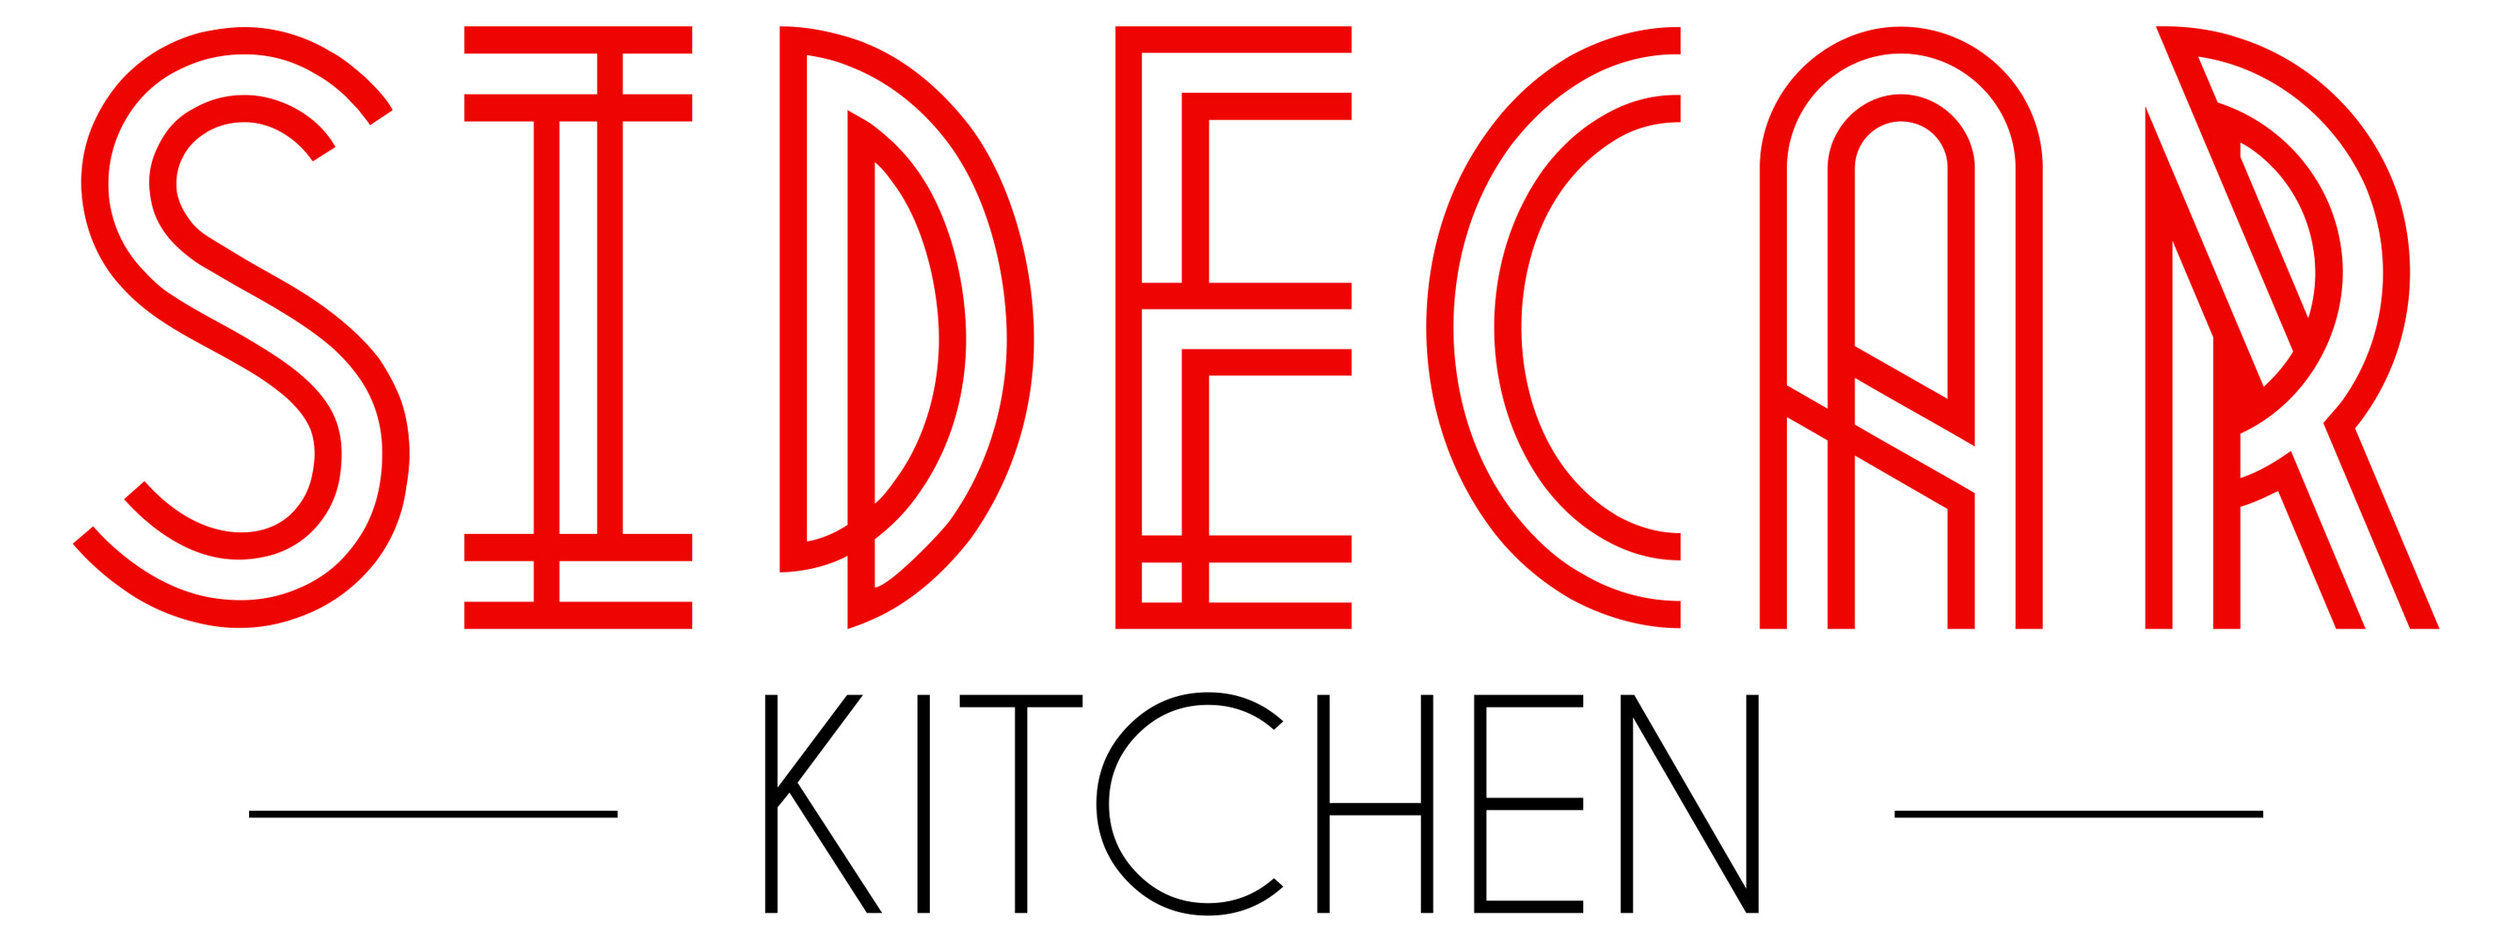 Sidecar Kitchen